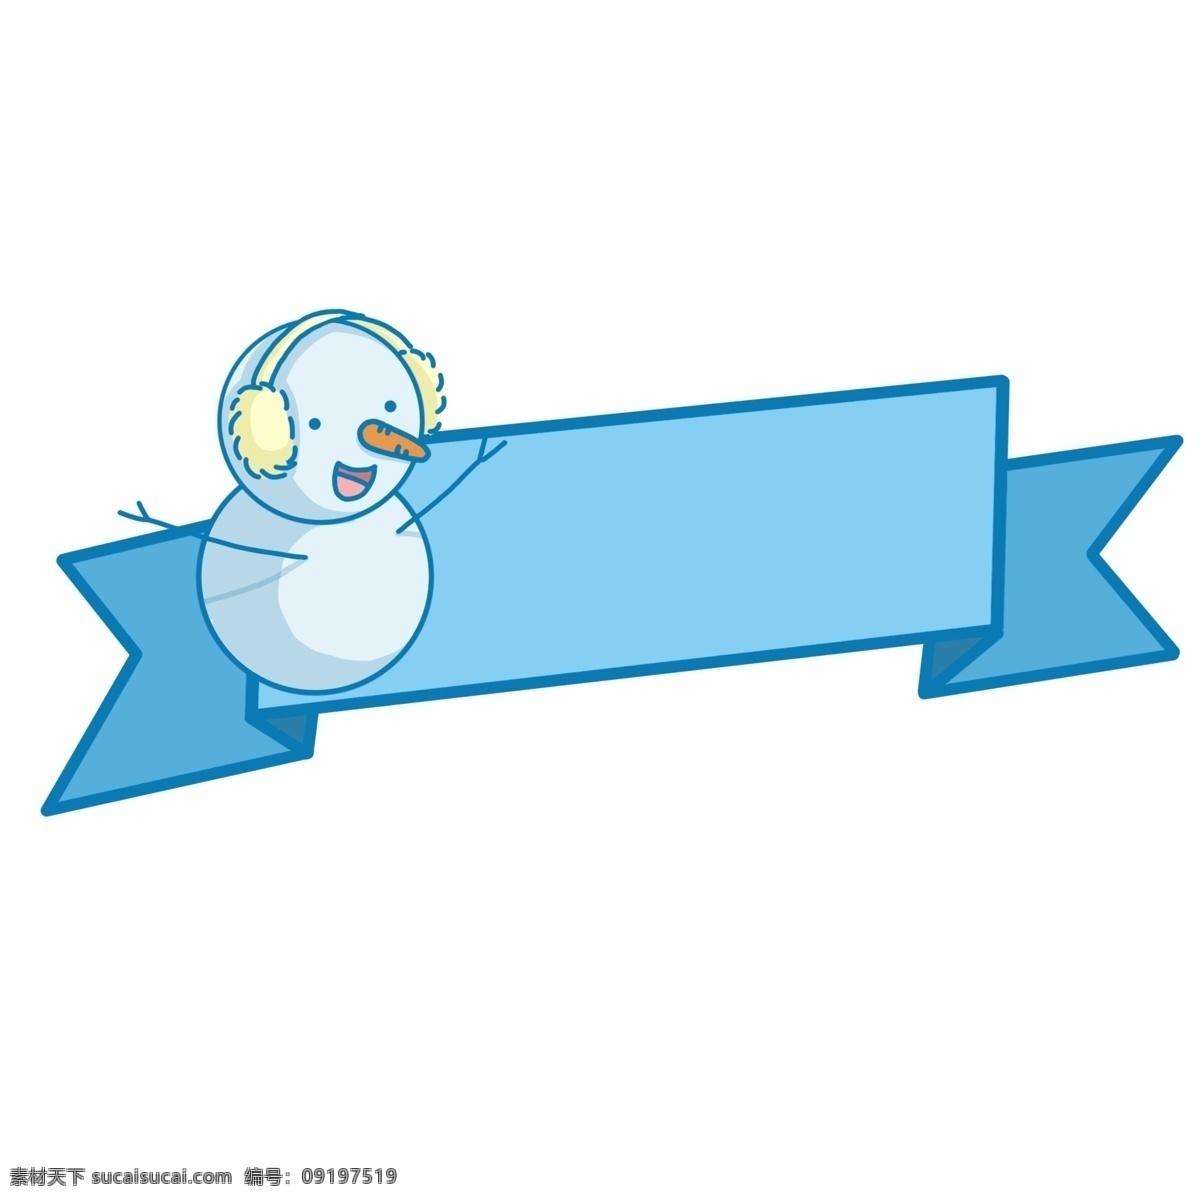 蓝色 卡通 雪人 手绘 标题 框 彩带 简约 标题框 装饰 线条 小清新 随意 气泡框 对话框 醒目 可爱